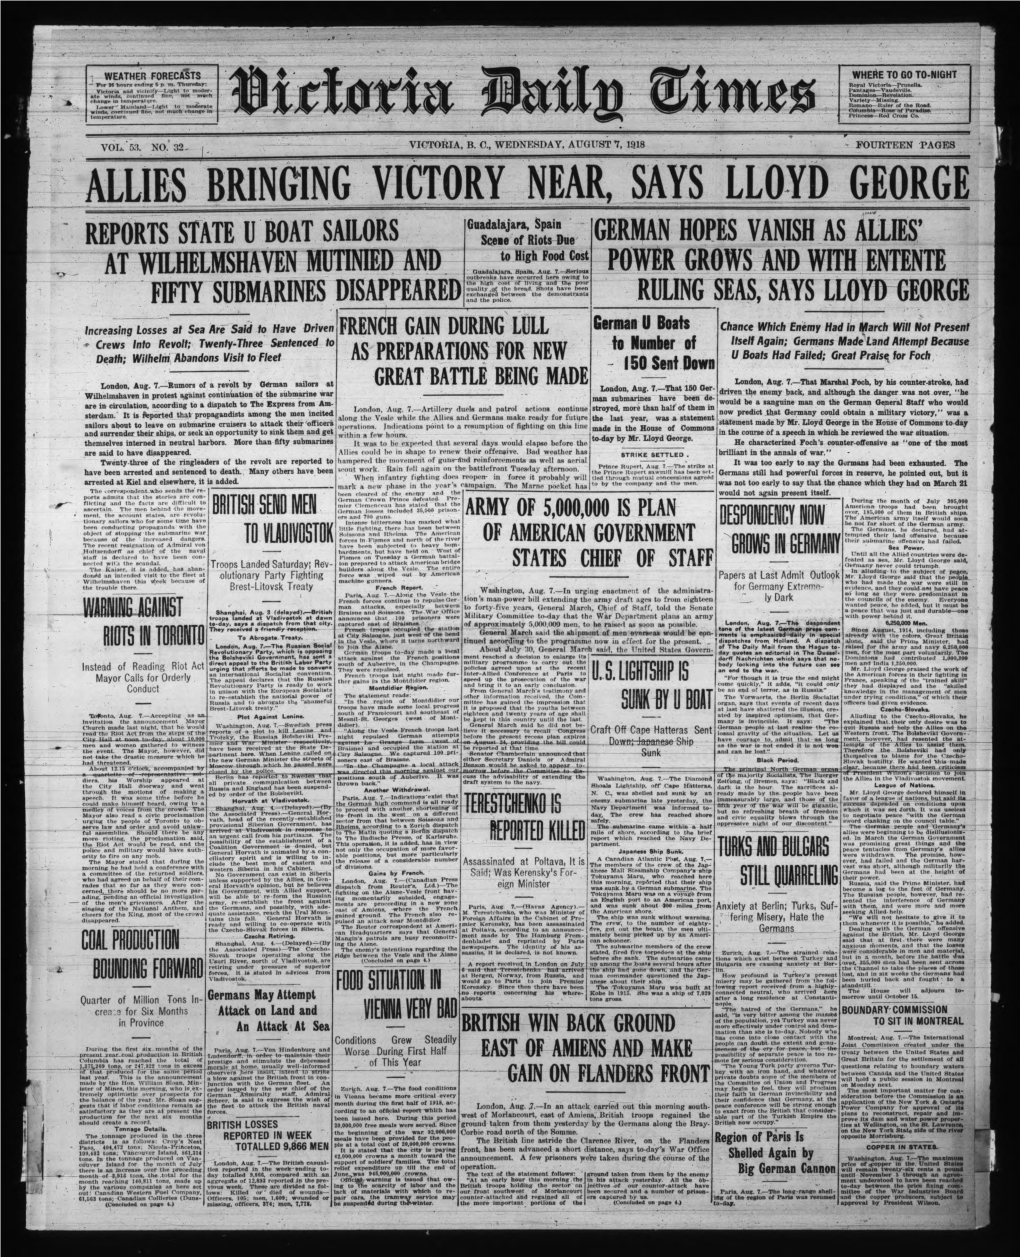 Allies Bringing Victory Near, Says Lloyd George